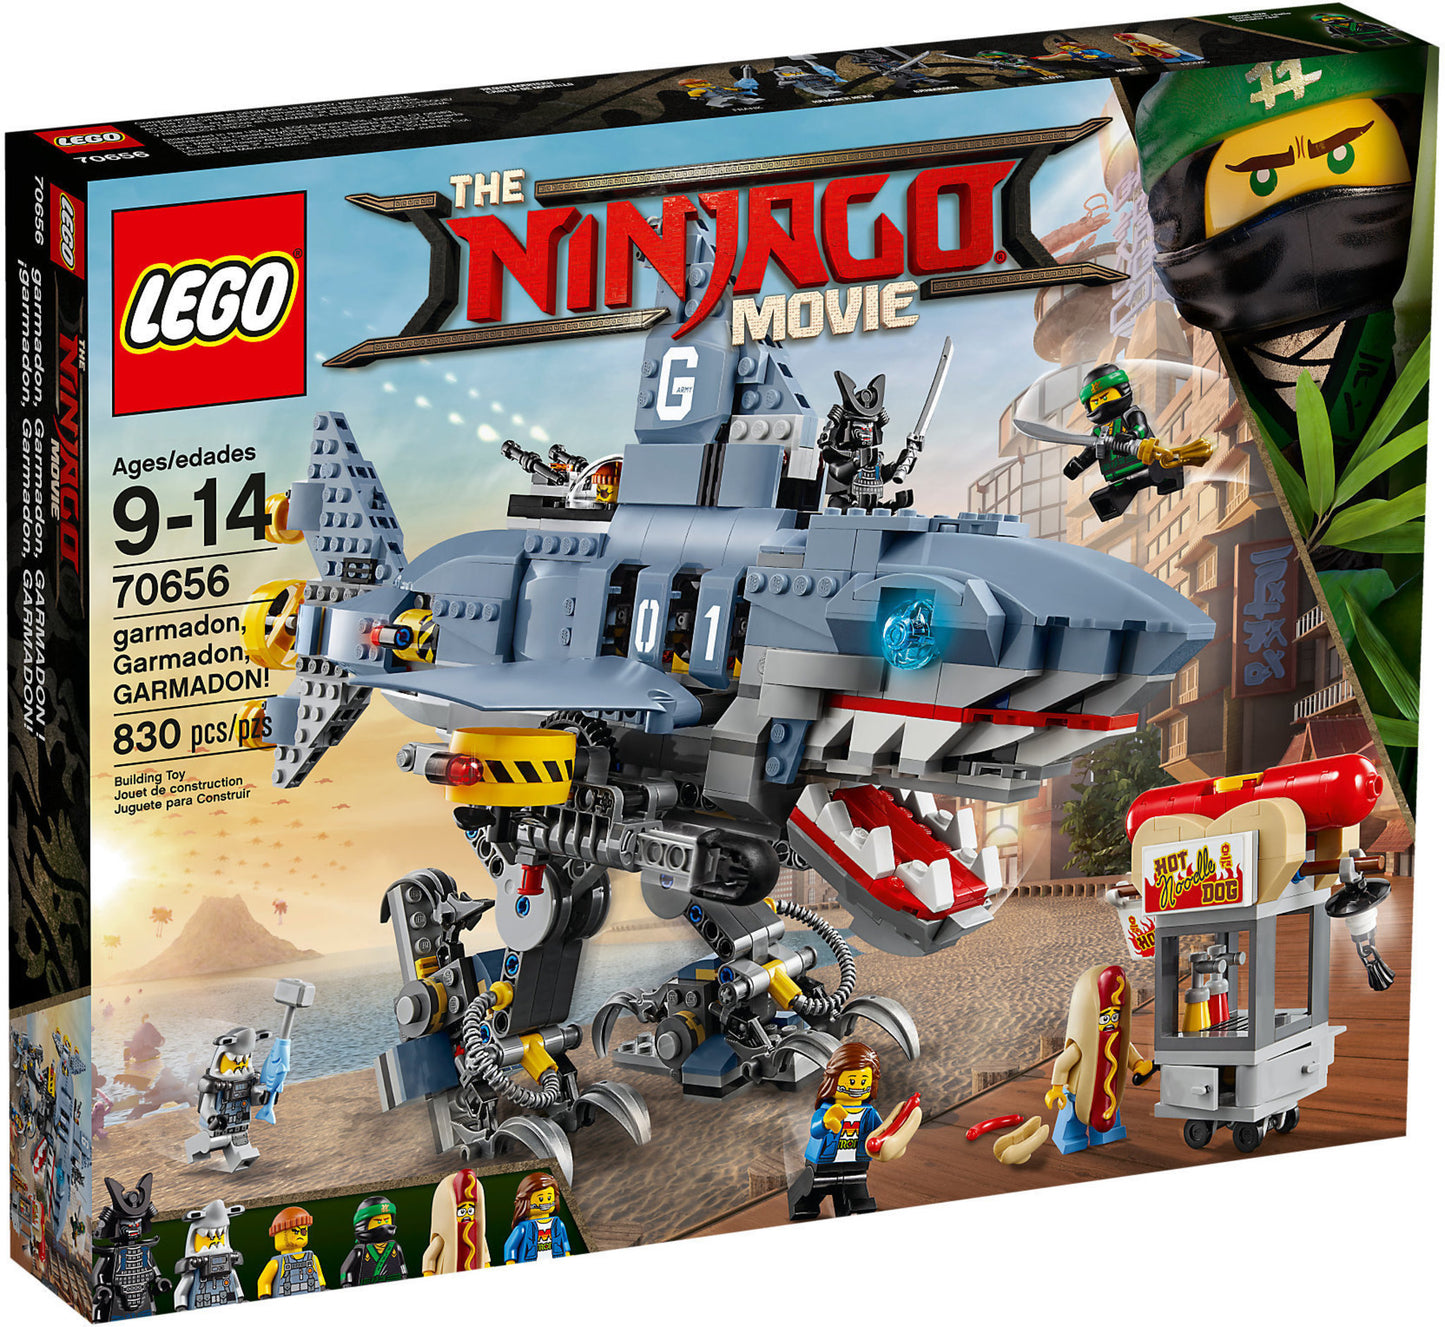 70656 LEGO Ninjago Movie - garmadon, Garmadon, GARMADON!